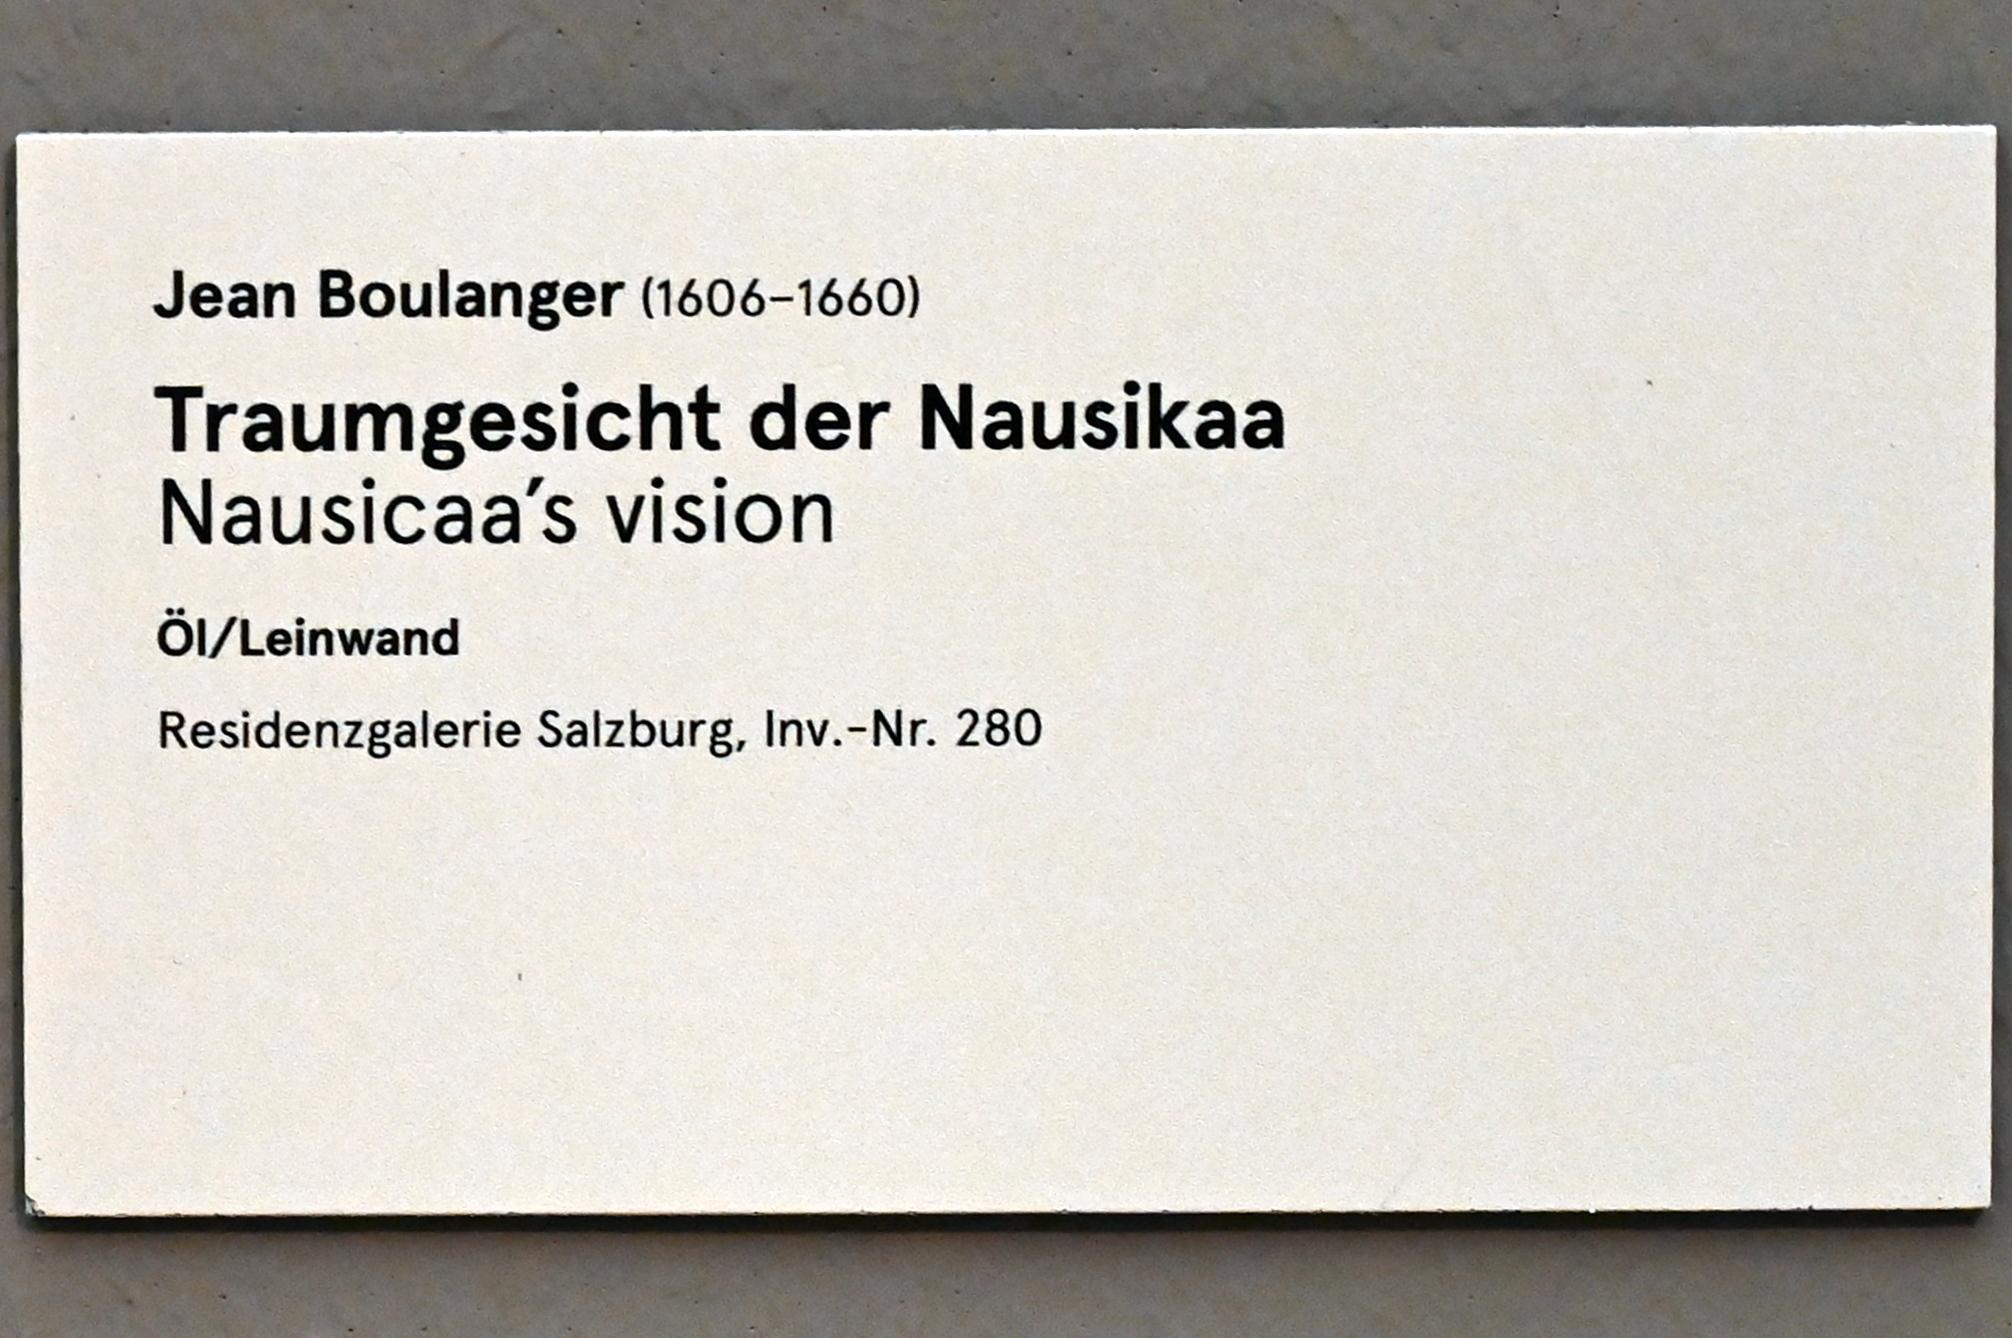 Jean Boulanger (Undatiert), Traumgesicht der Nausikaa, Salzburg, Salzburger Residenz, Residenzgalerie, Undatiert, Bild 2/2